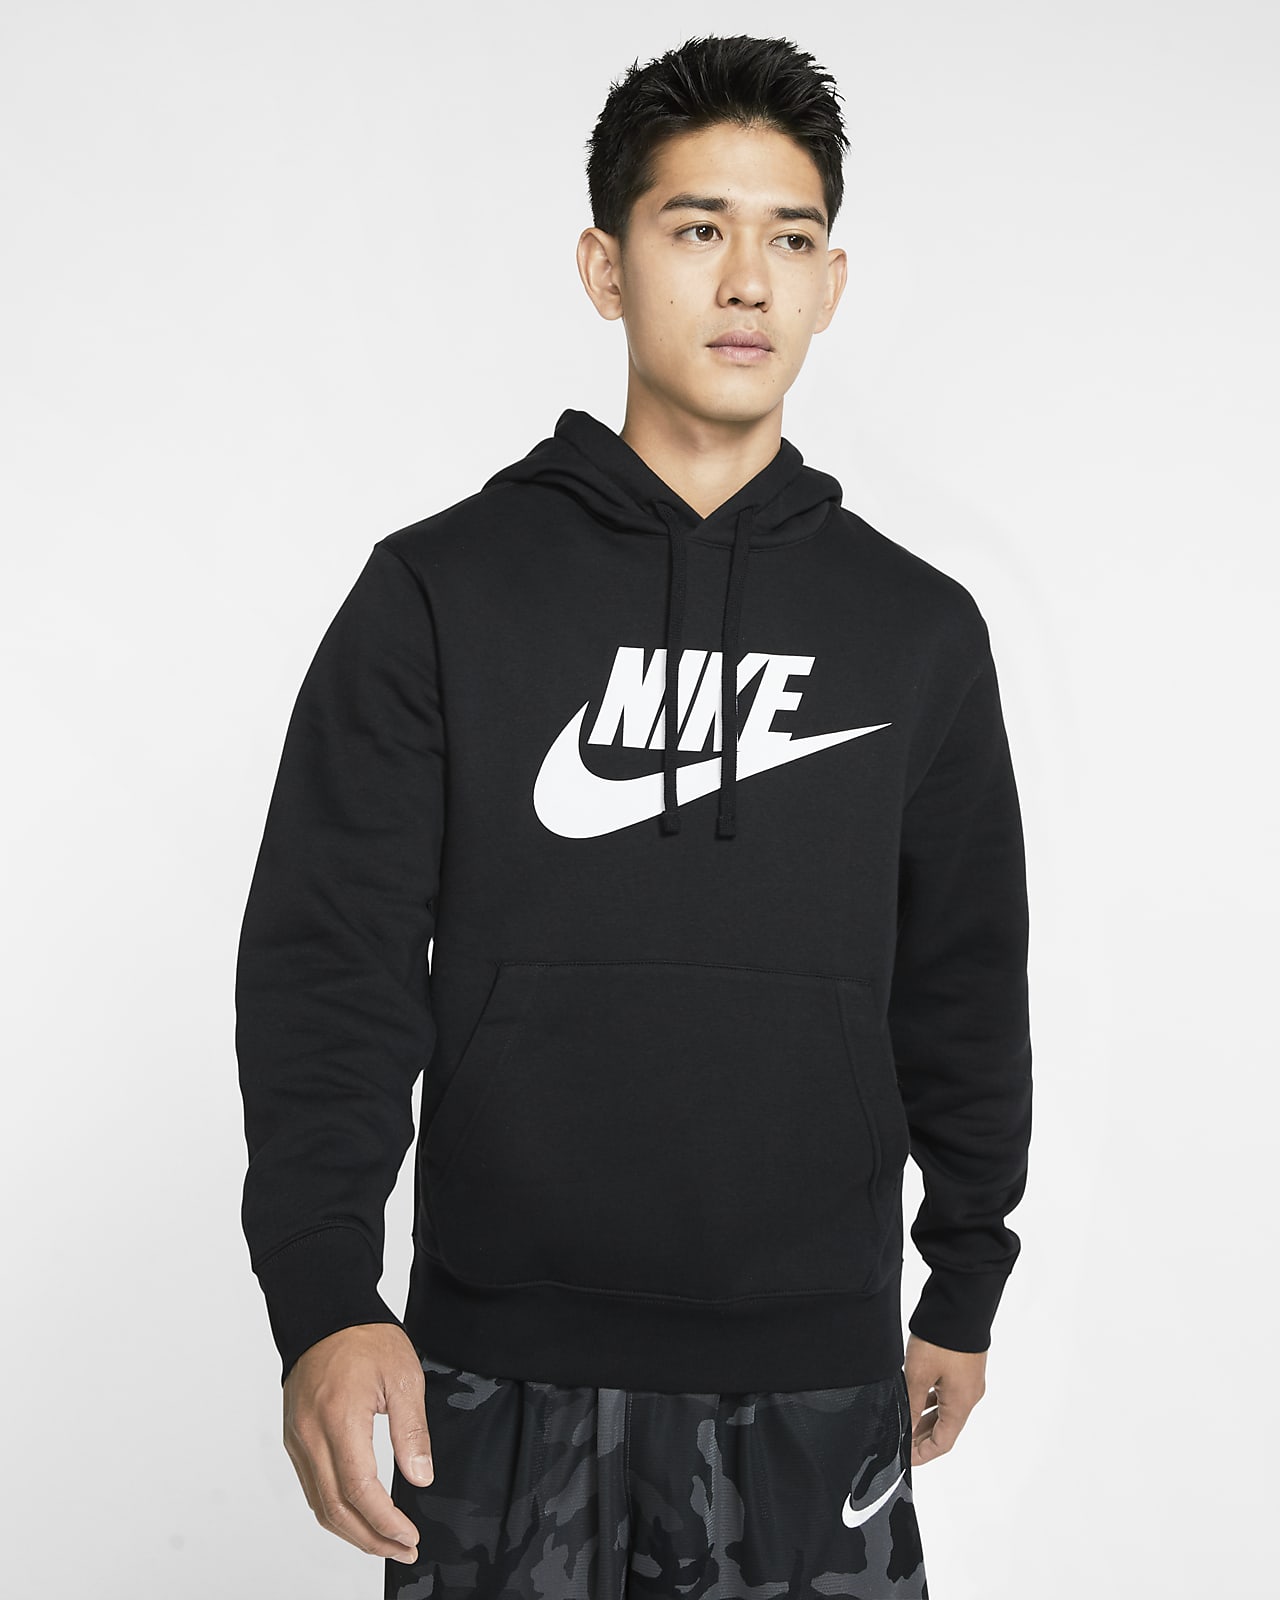 Preventie Beter Persoonlijk Nike Sportswear Club Fleece Men's Graphic Pullover Hoodie. Nike UK